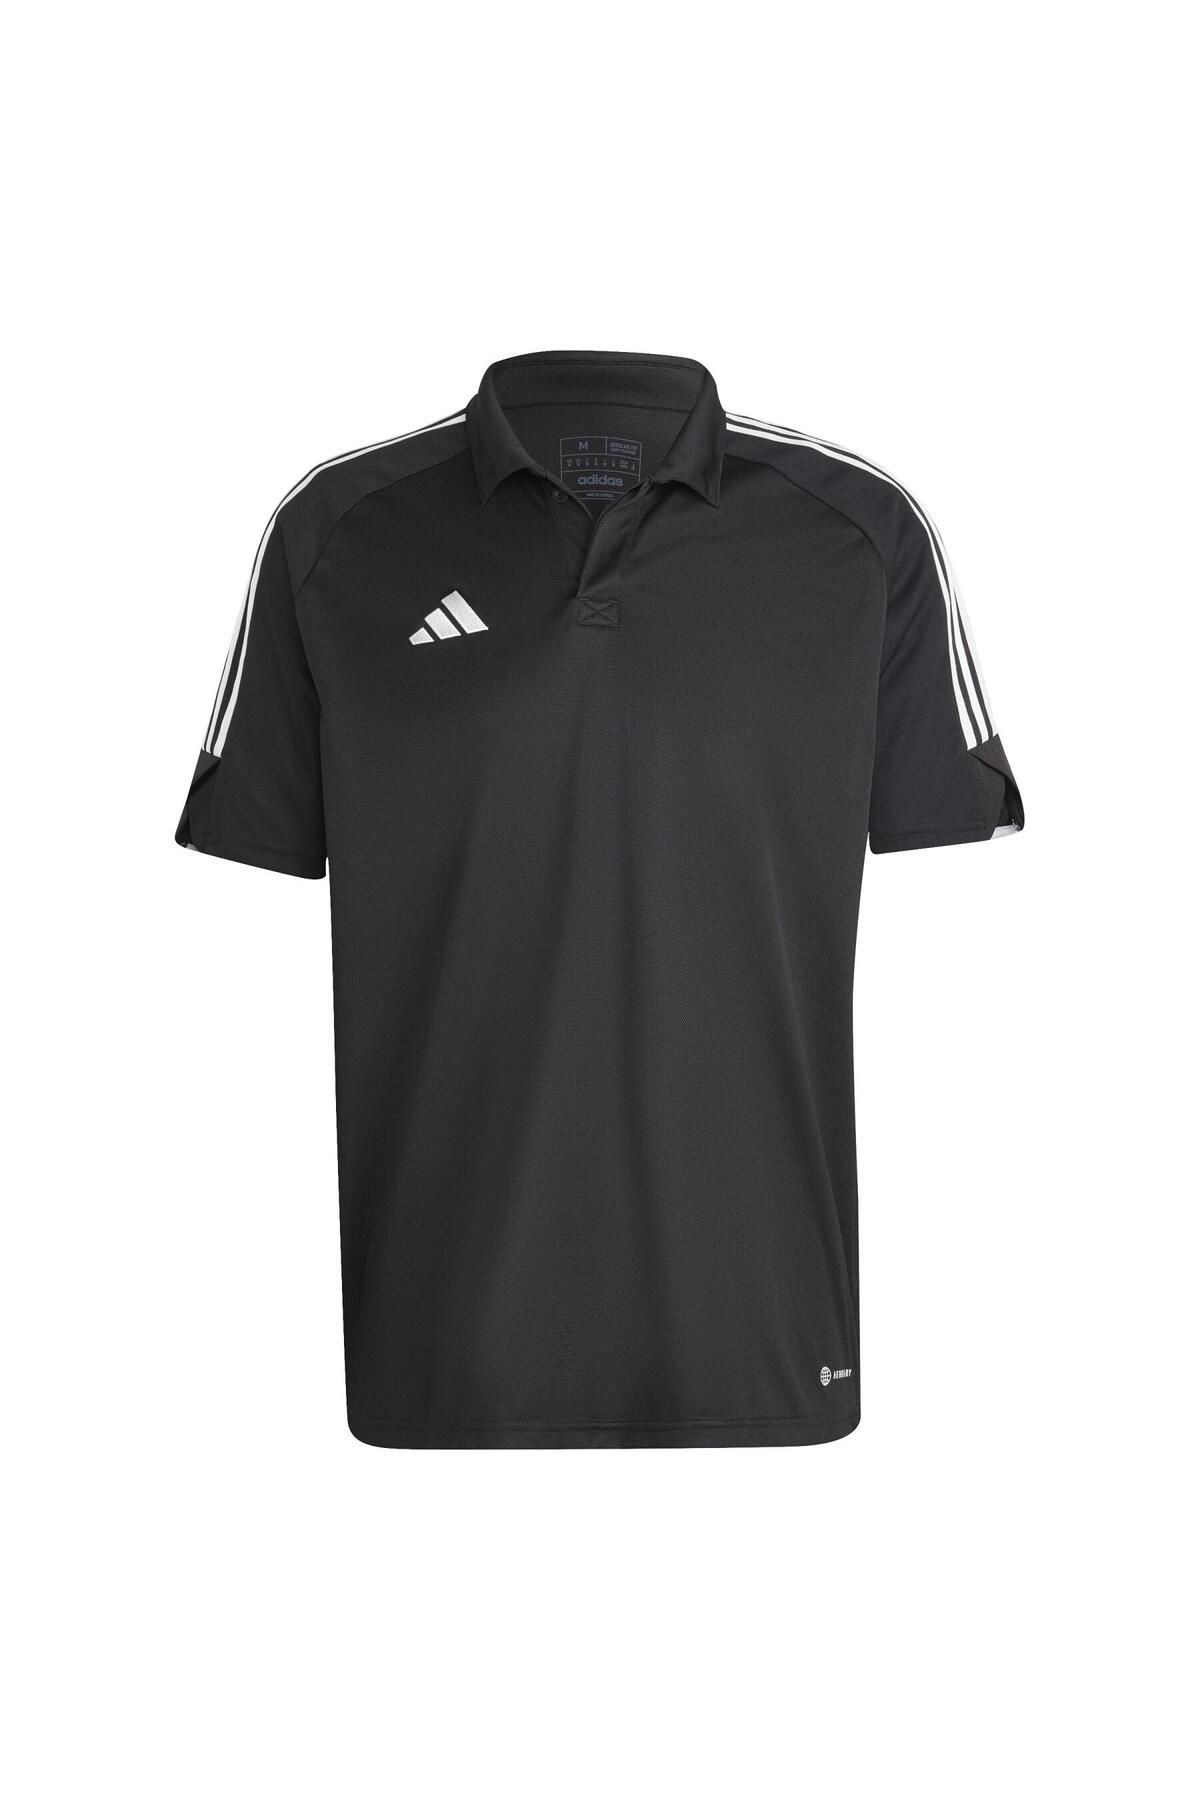 adidas Günlük Kullanıma Uygun Polo Erkek Tişörtü Spor Tişört